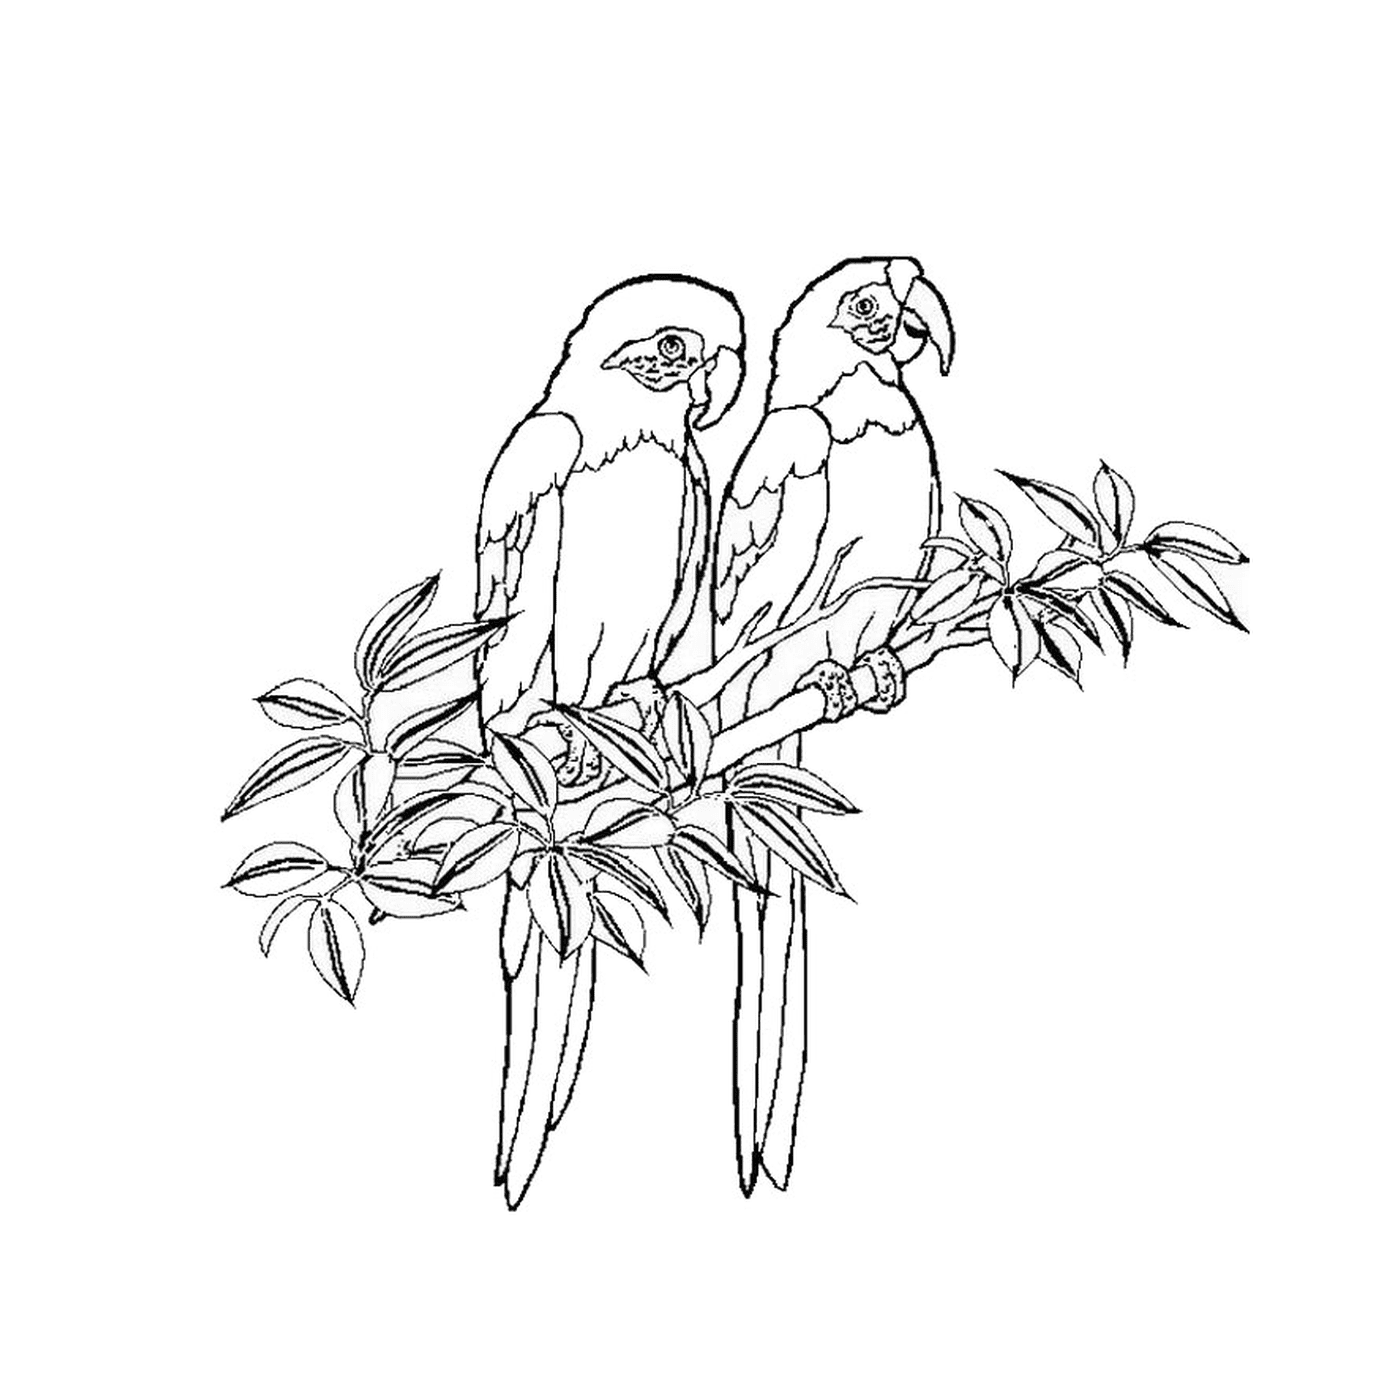  Zwei Perücken sitzen auf einem Baumzweig 